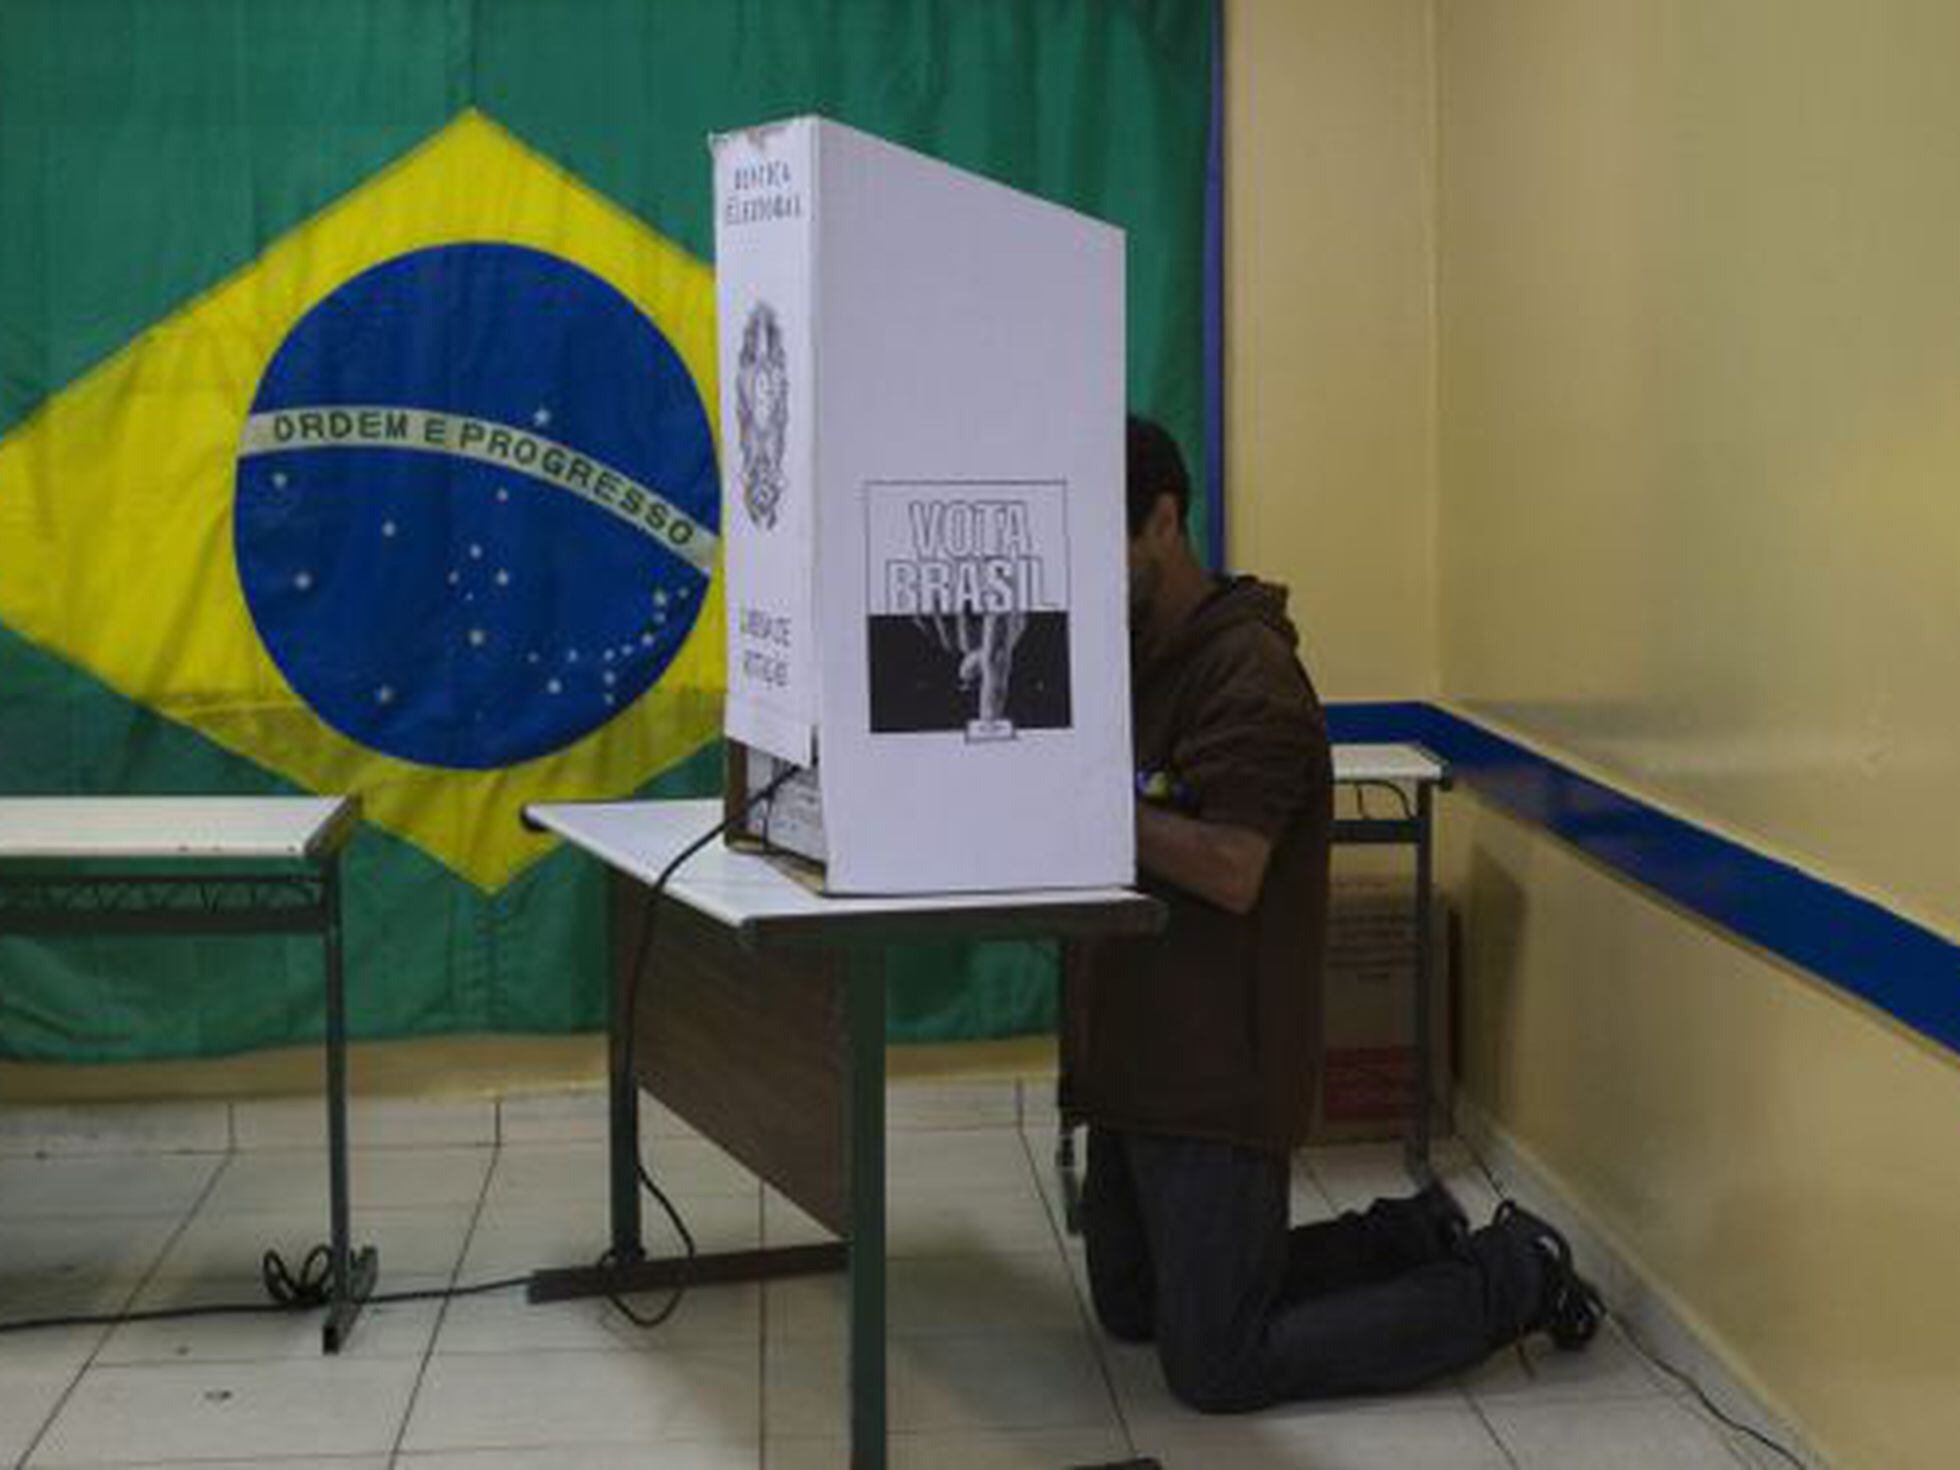 O que é o Boletim de Urna? — Tribunal Regional Eleitoral de São Paulo